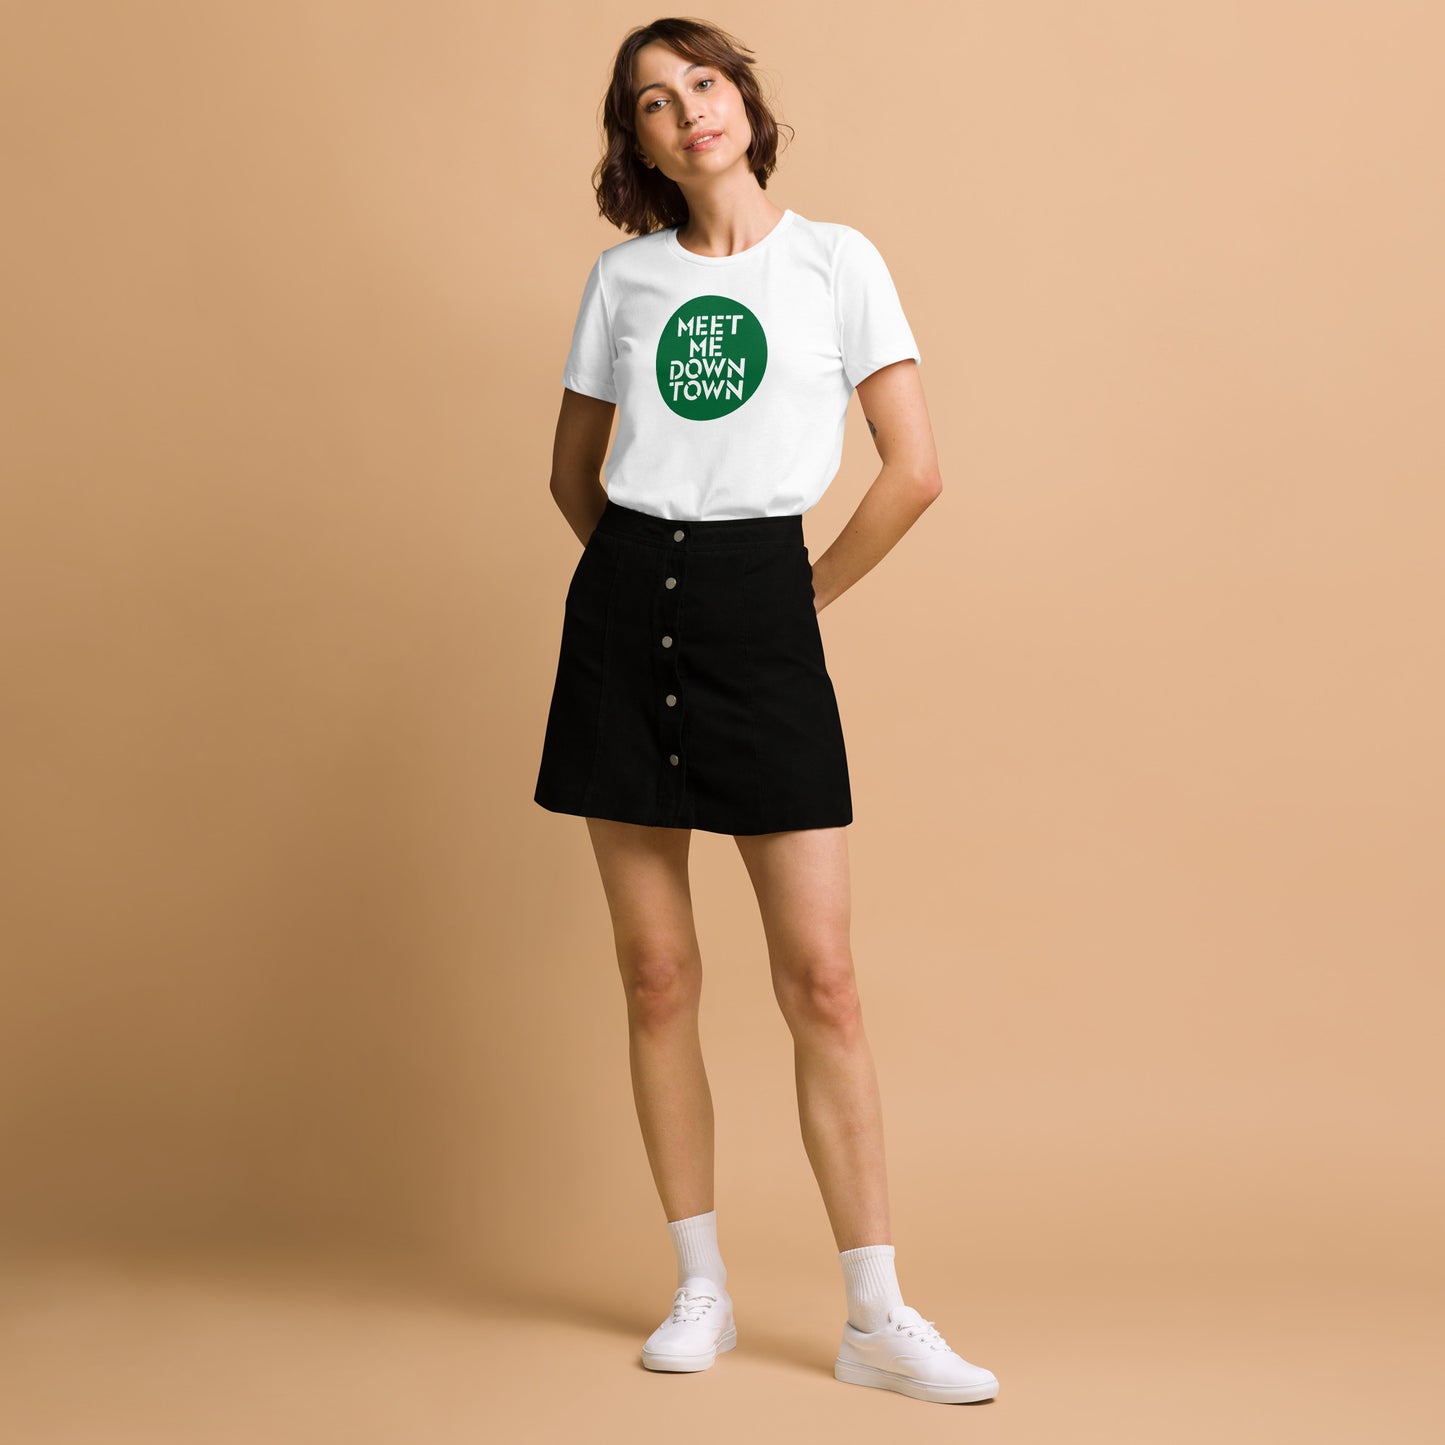 "Meet Me Downtown" Green Women’s Relaxed Tri-Blend T-shirt